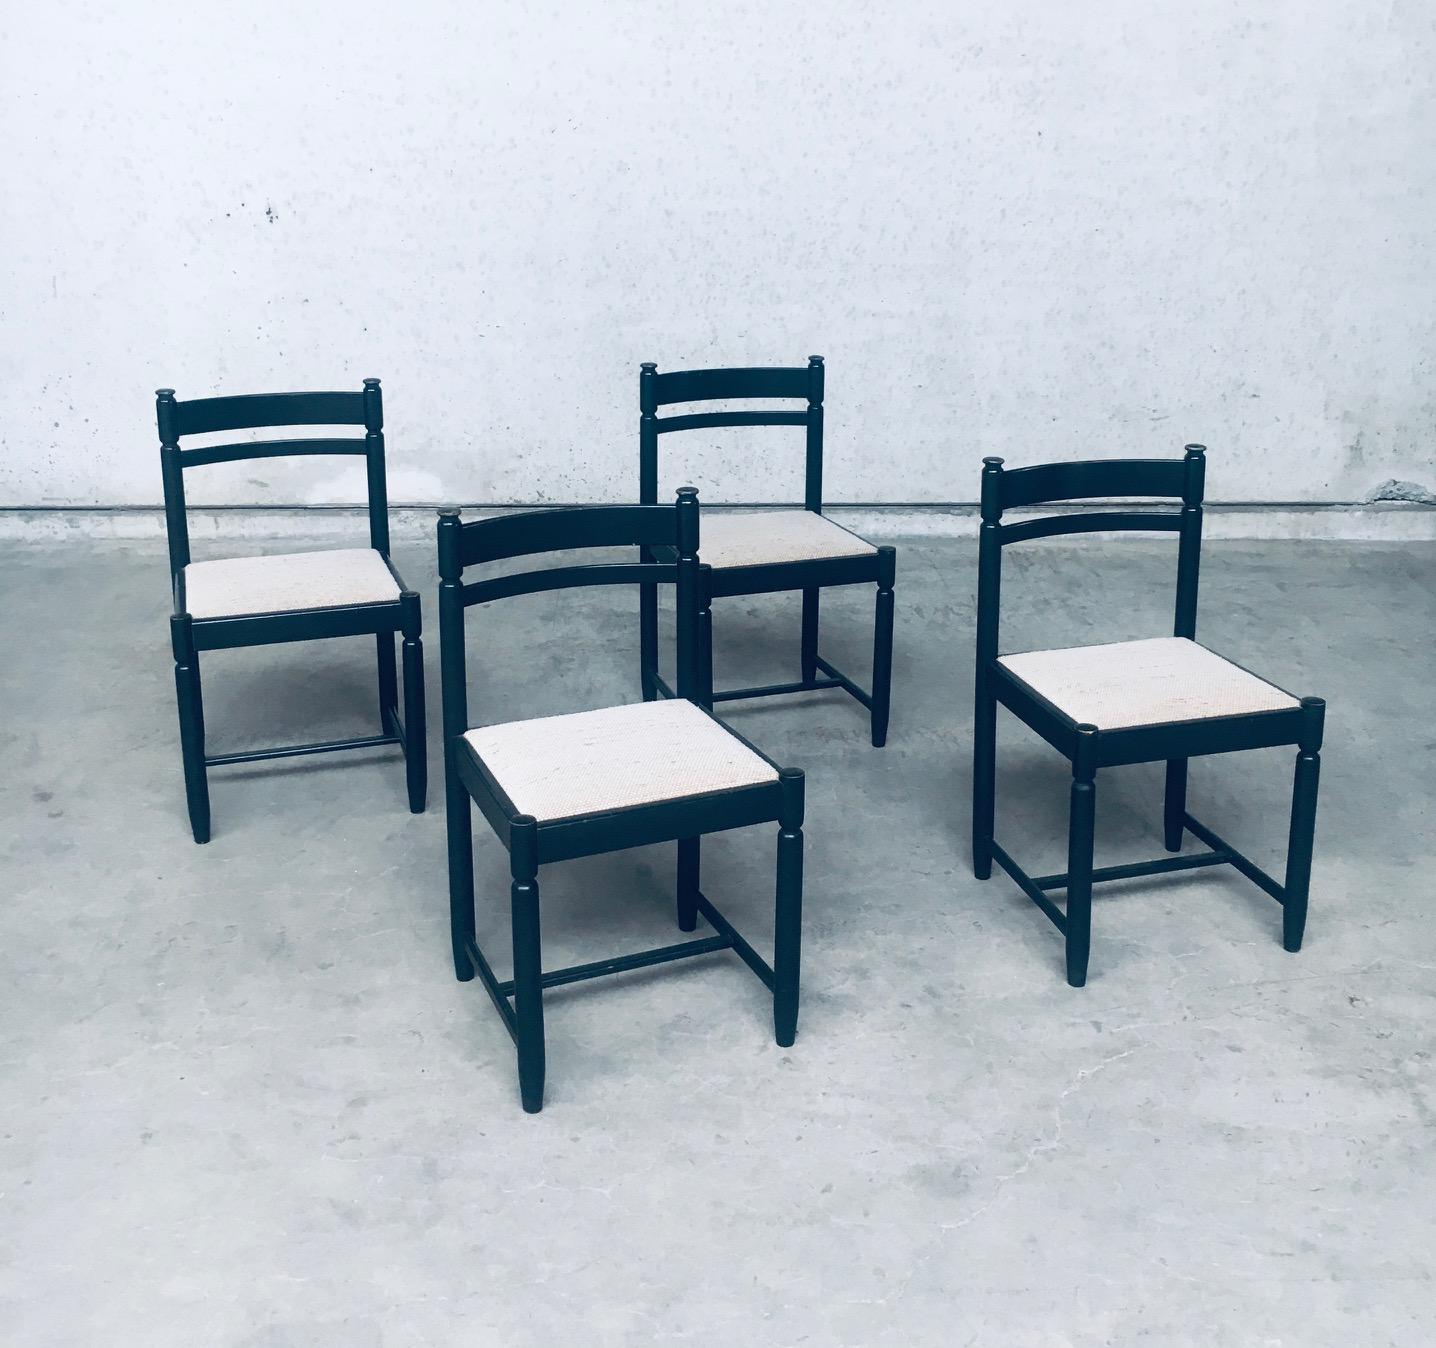 Vintage Midcentury Modern Italian Design Dining Chair Satz von 4, hergestellt in Italien 1960er / 70er Jahre.  Schwarz gebeiztes Buchenholzgestell mit wollbezogenem Sitz. In Anlehnung an die Stühle von Vico Magistretti Carimate Design. Diese sind